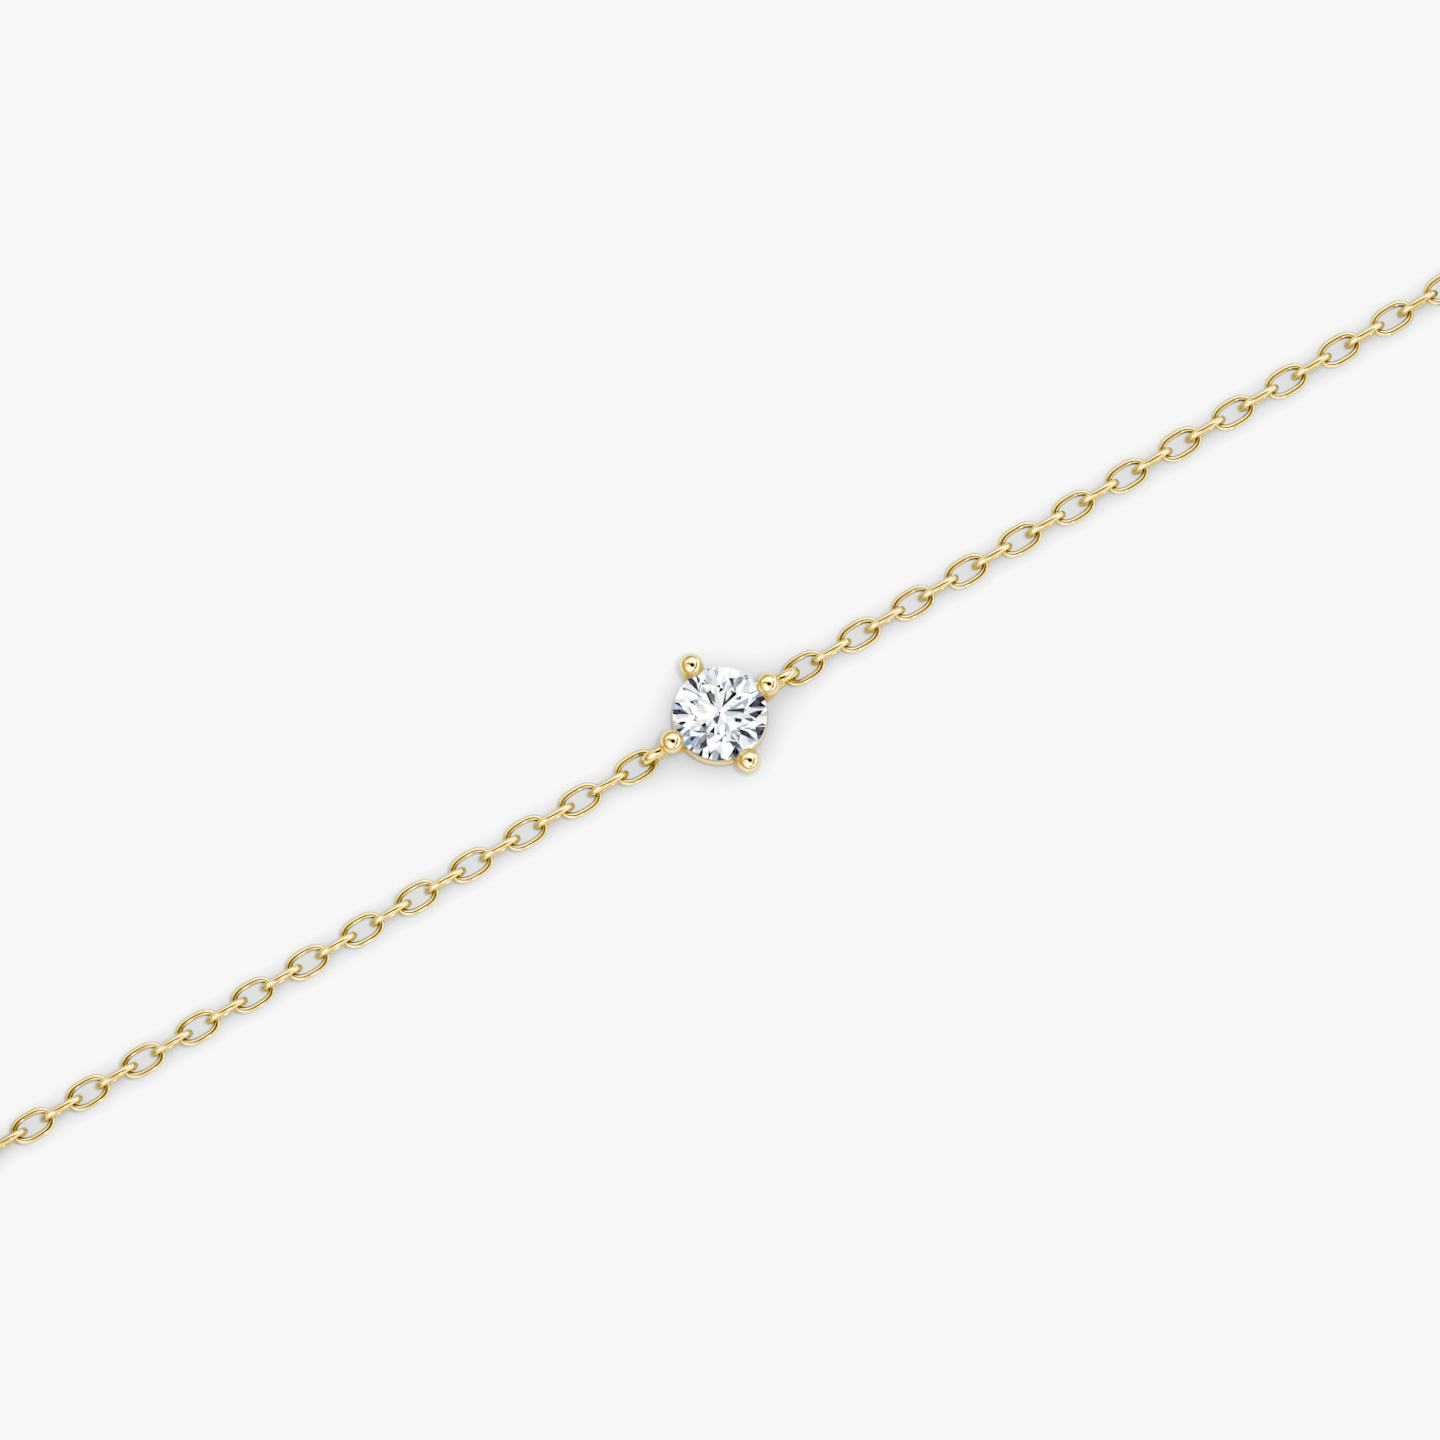 Bracelet Petite Solitaire | Rond Brillant | 14k | Or jaune 18 carats | Longueur de la chaîne: 7